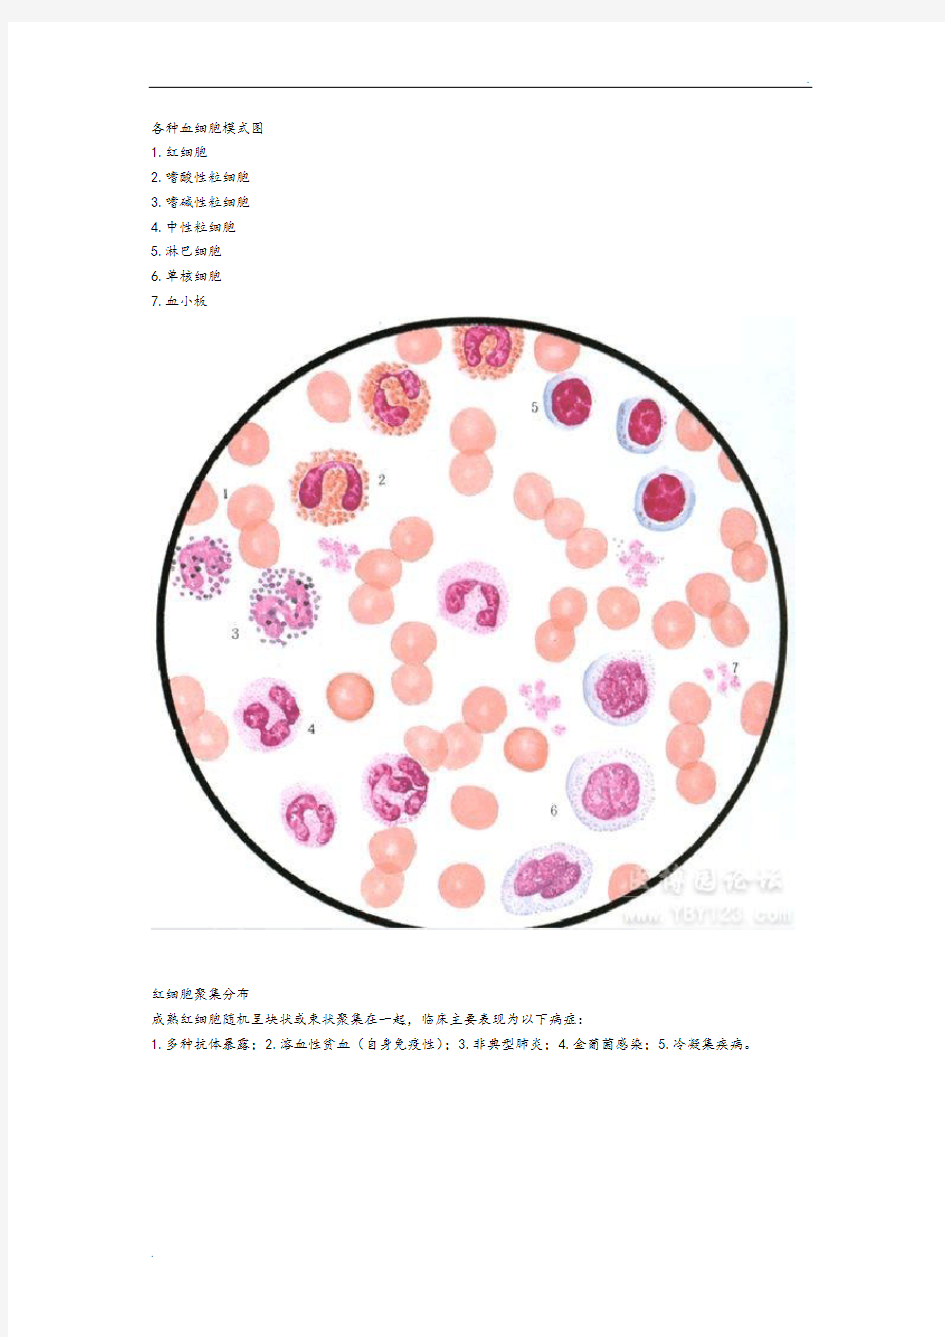 各种血细胞模式图 (2)